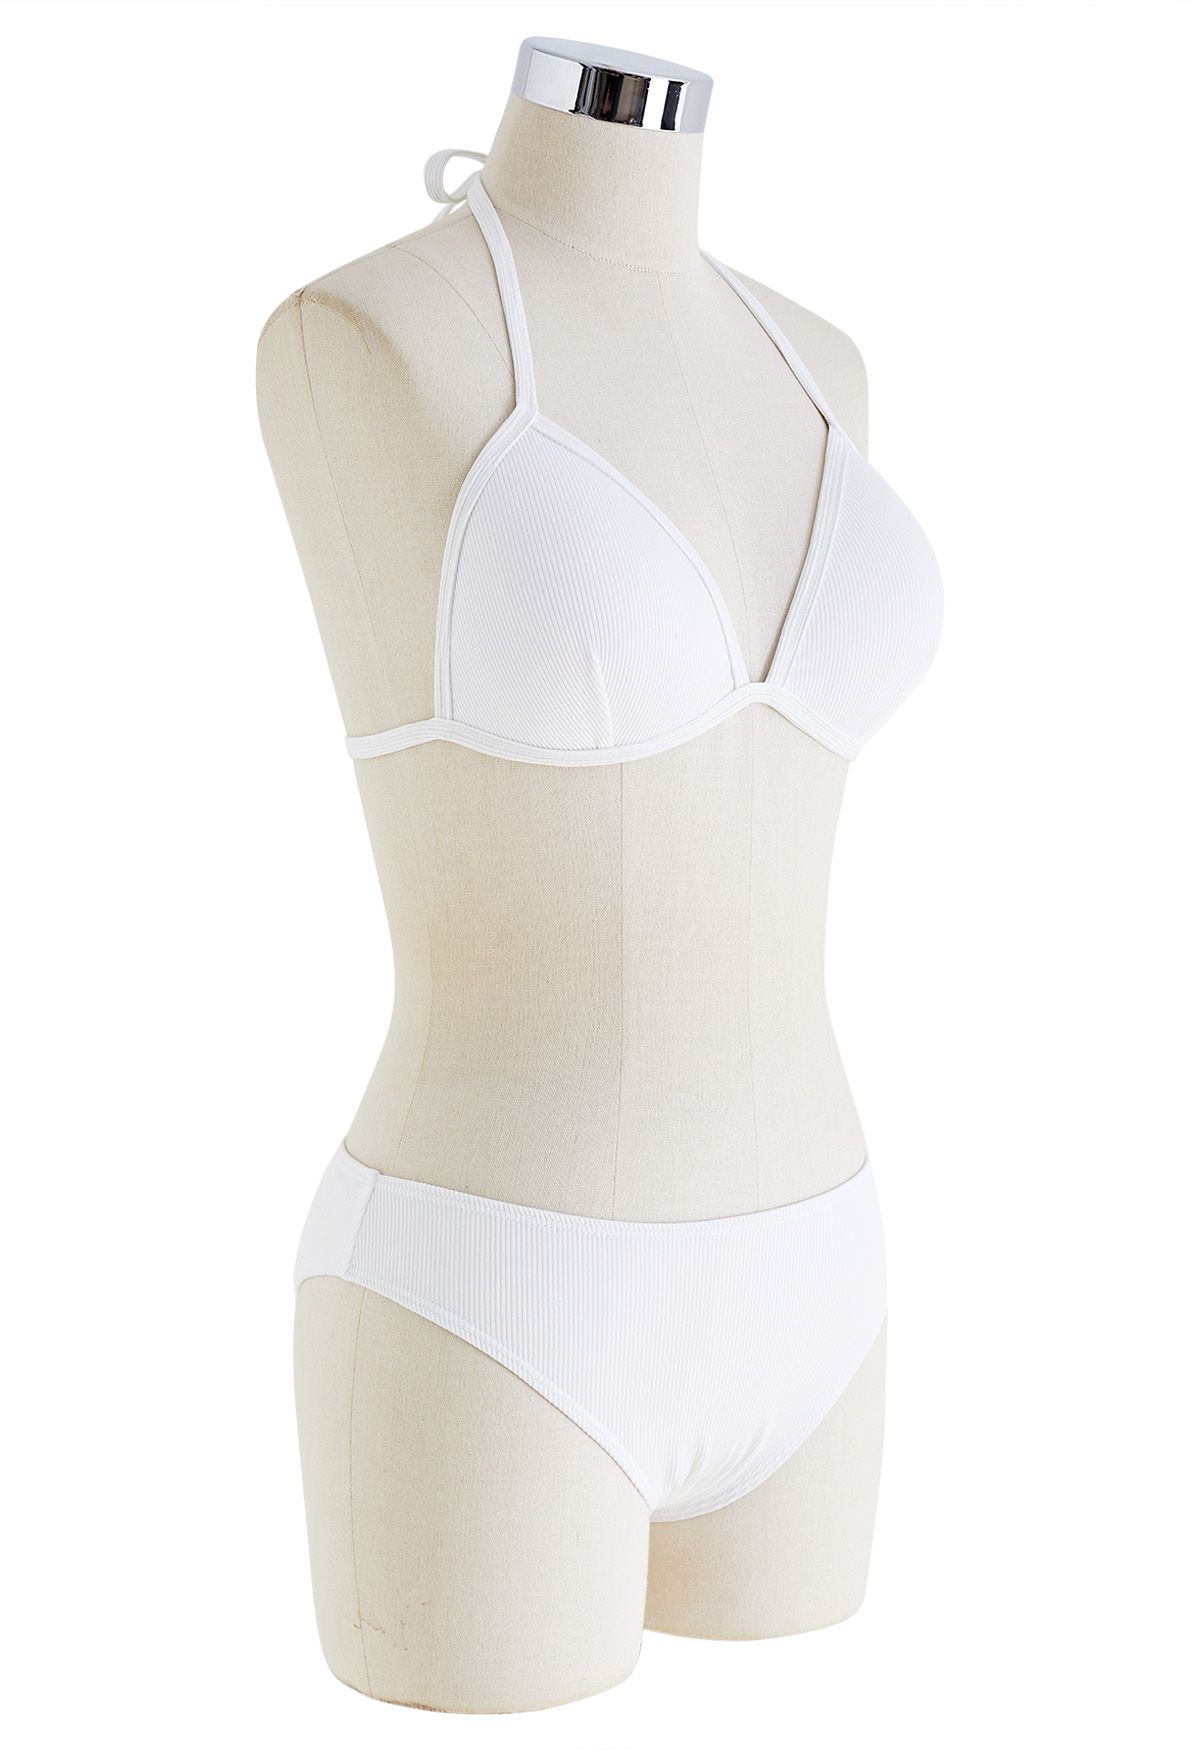 Schlichtes weißes Bikini-Set mit Bindebändern